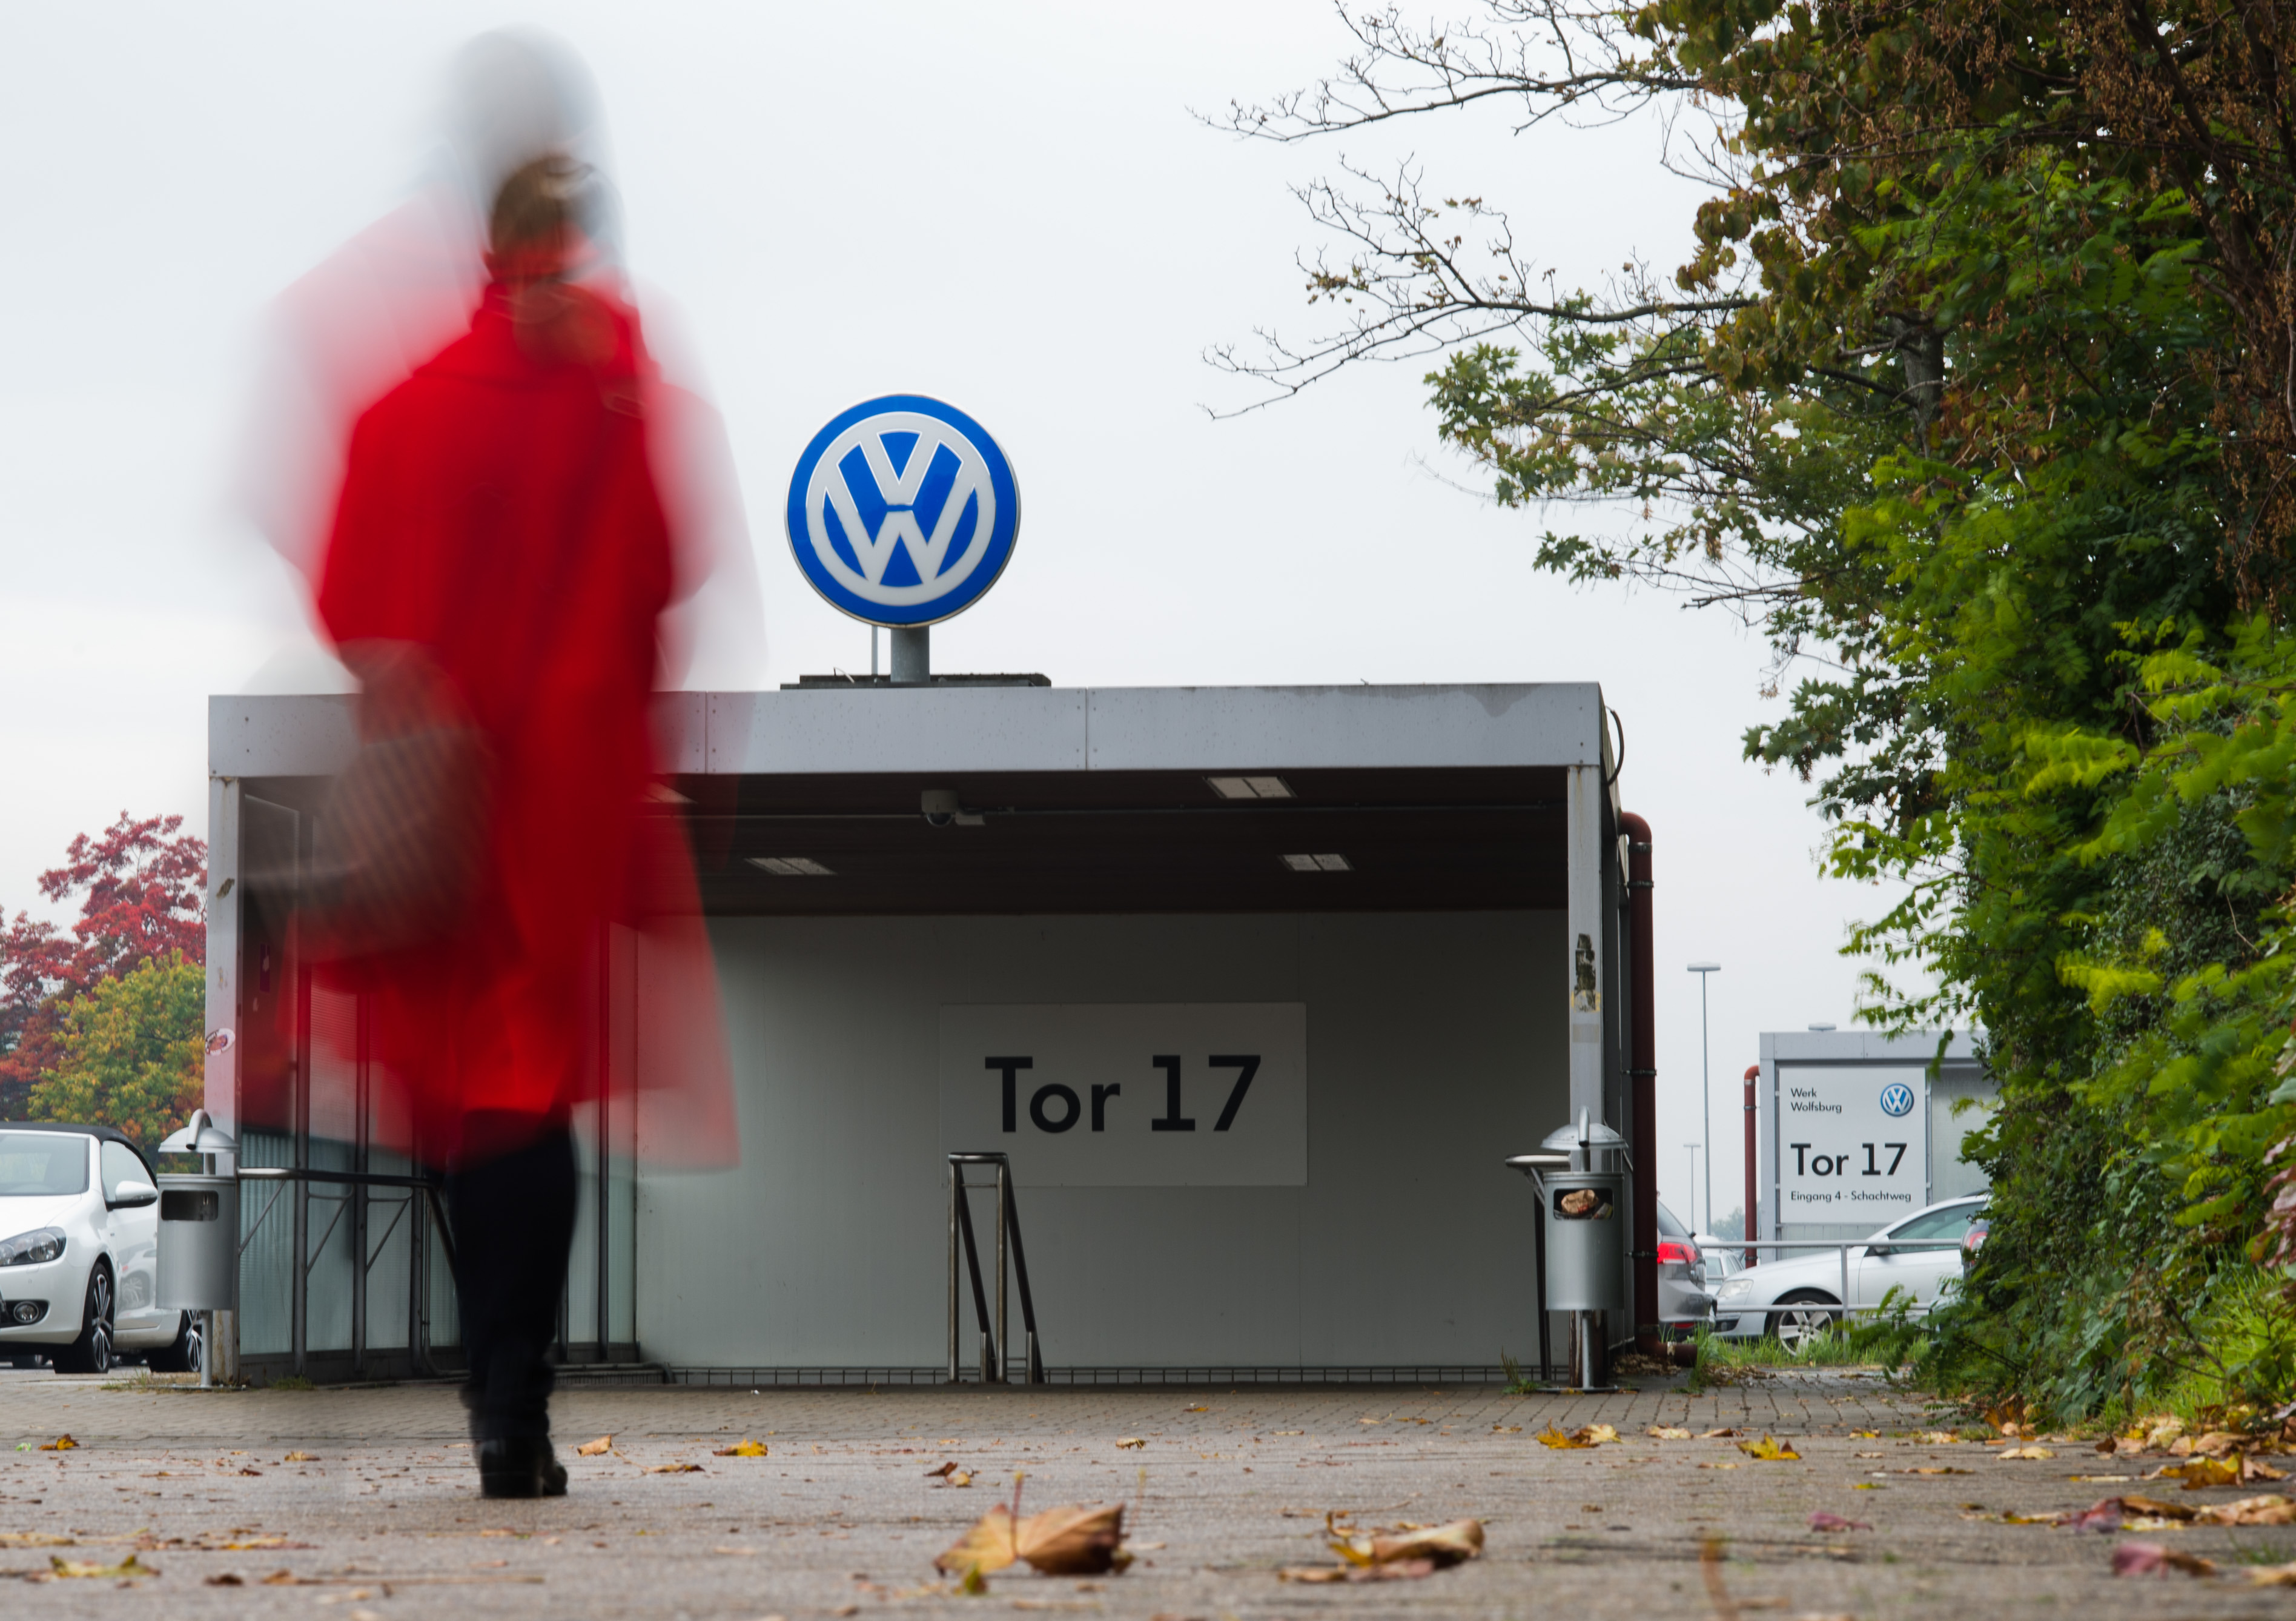 Toν Ιανουάριο του 2016 ξεκινά η ανάκληση των “ύποπτων” μοντέλων του ομίλου VW στην Ευρώπη